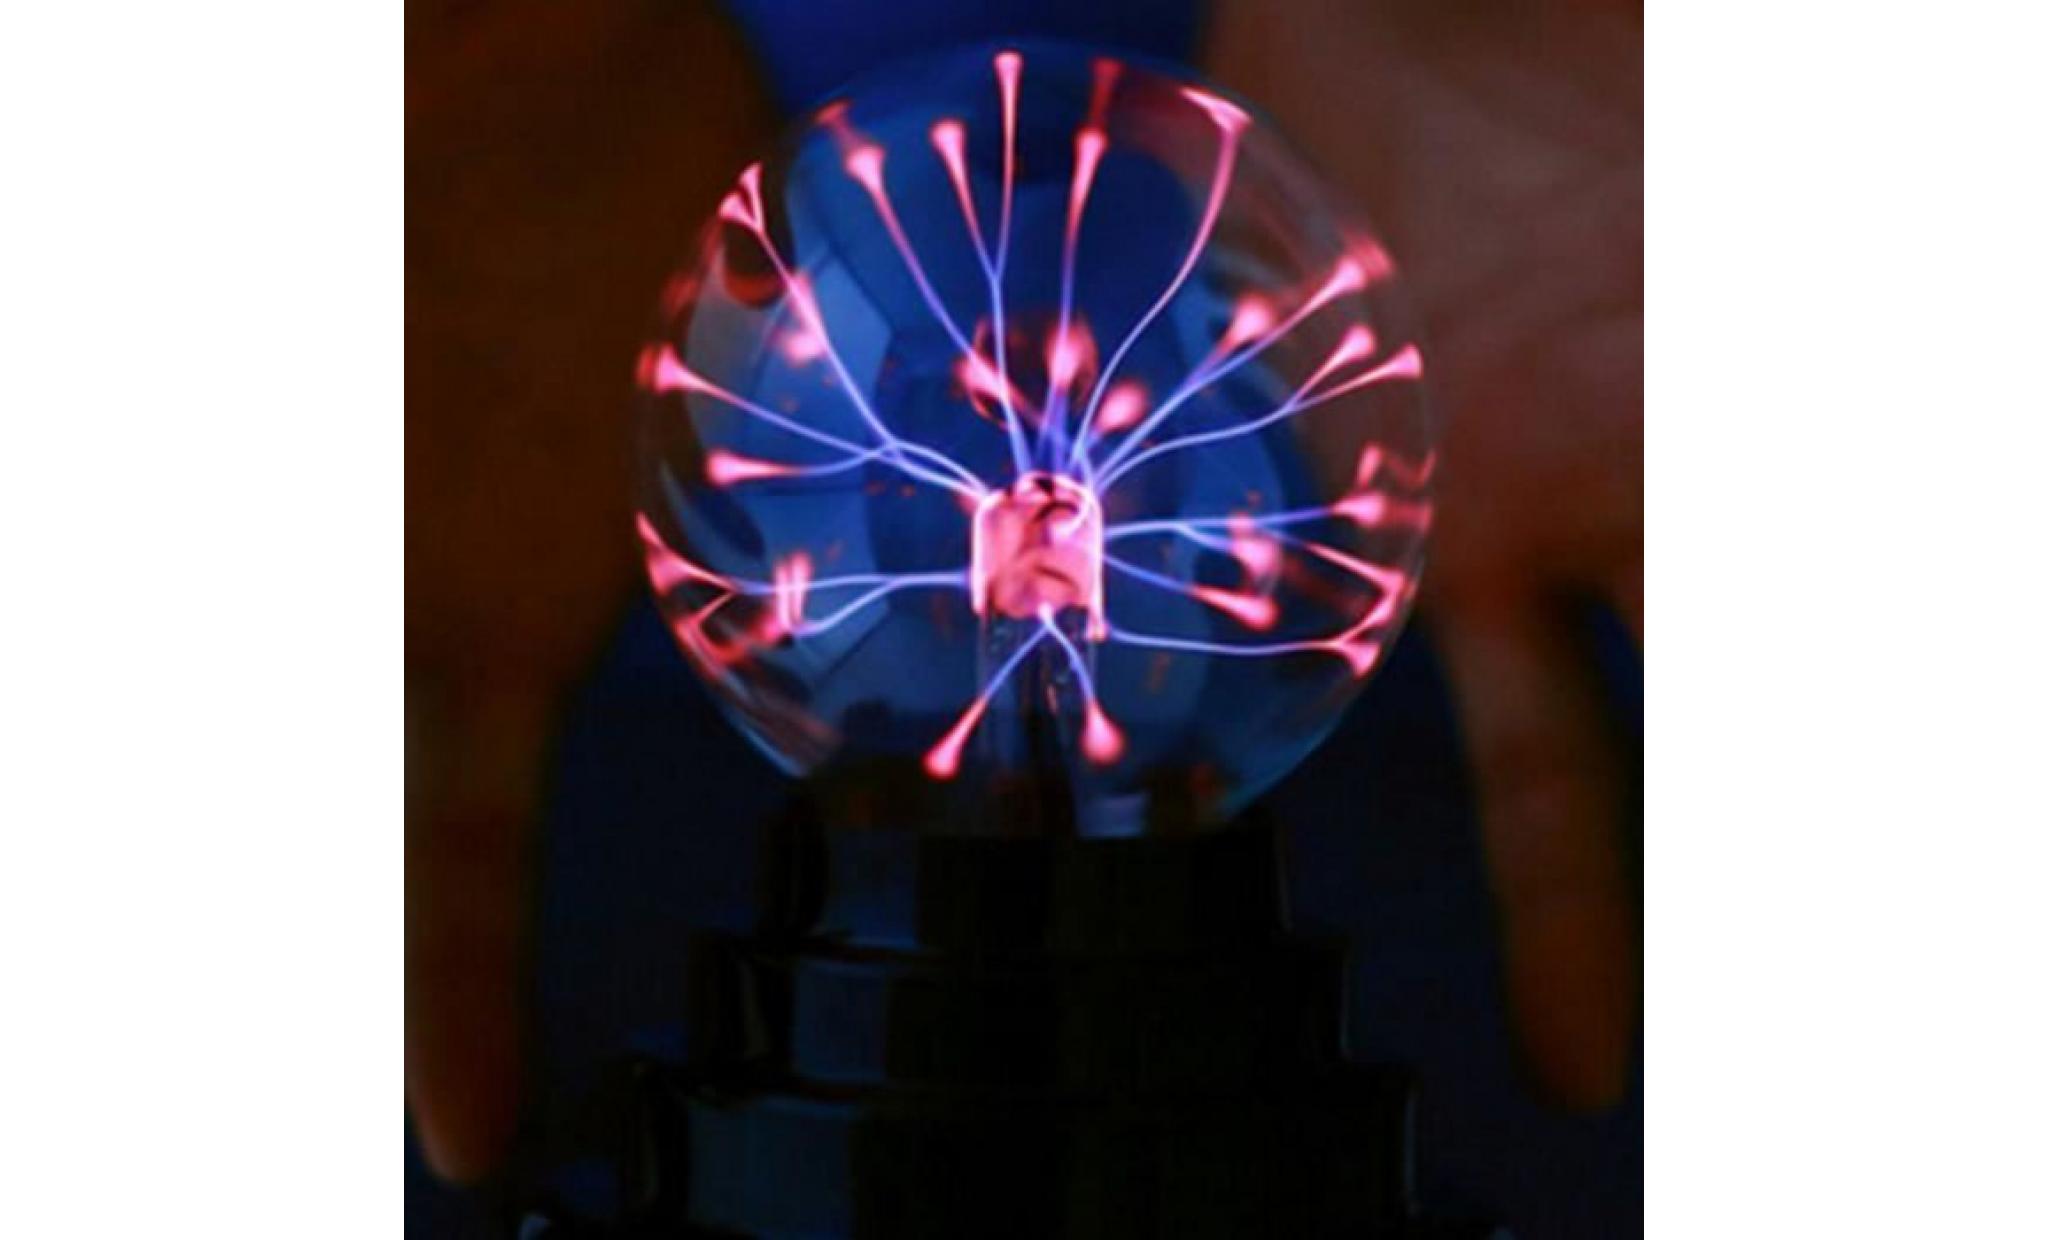 tempsa lumière cool plutôt différents boule de plasma fun science de l'électricité